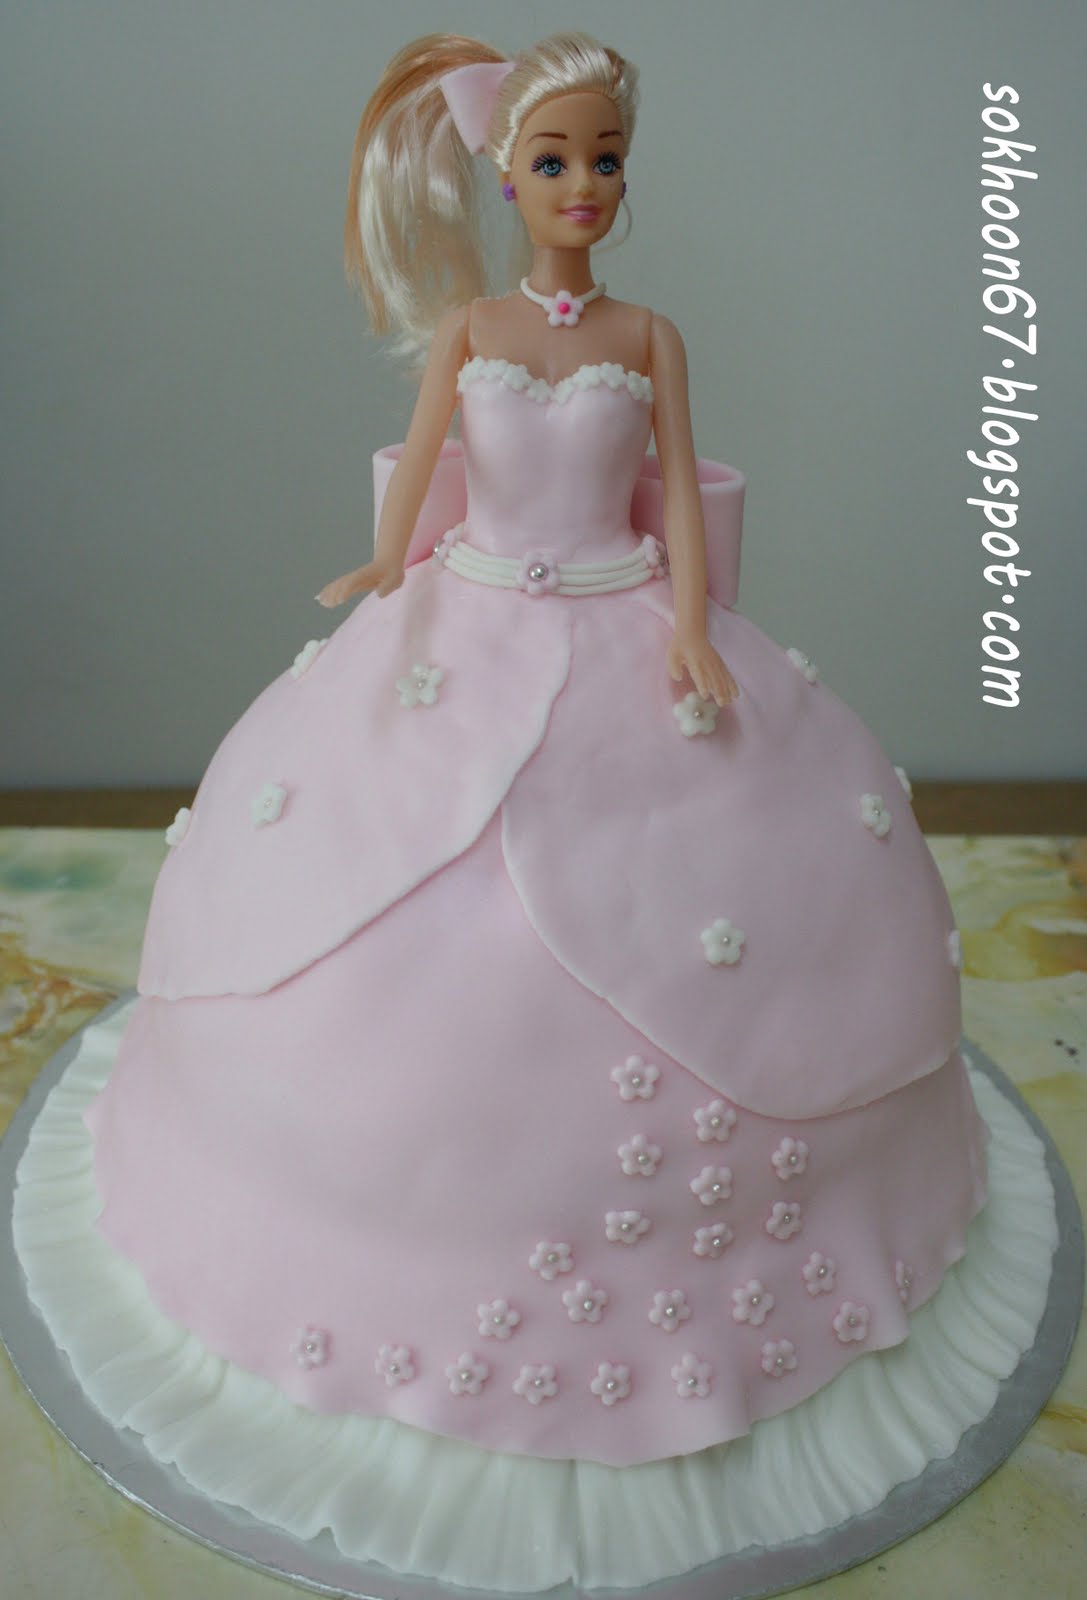 彩虹芭比公主蛋糕怎么做_彩虹芭比公主蛋糕的做法_豆果美食